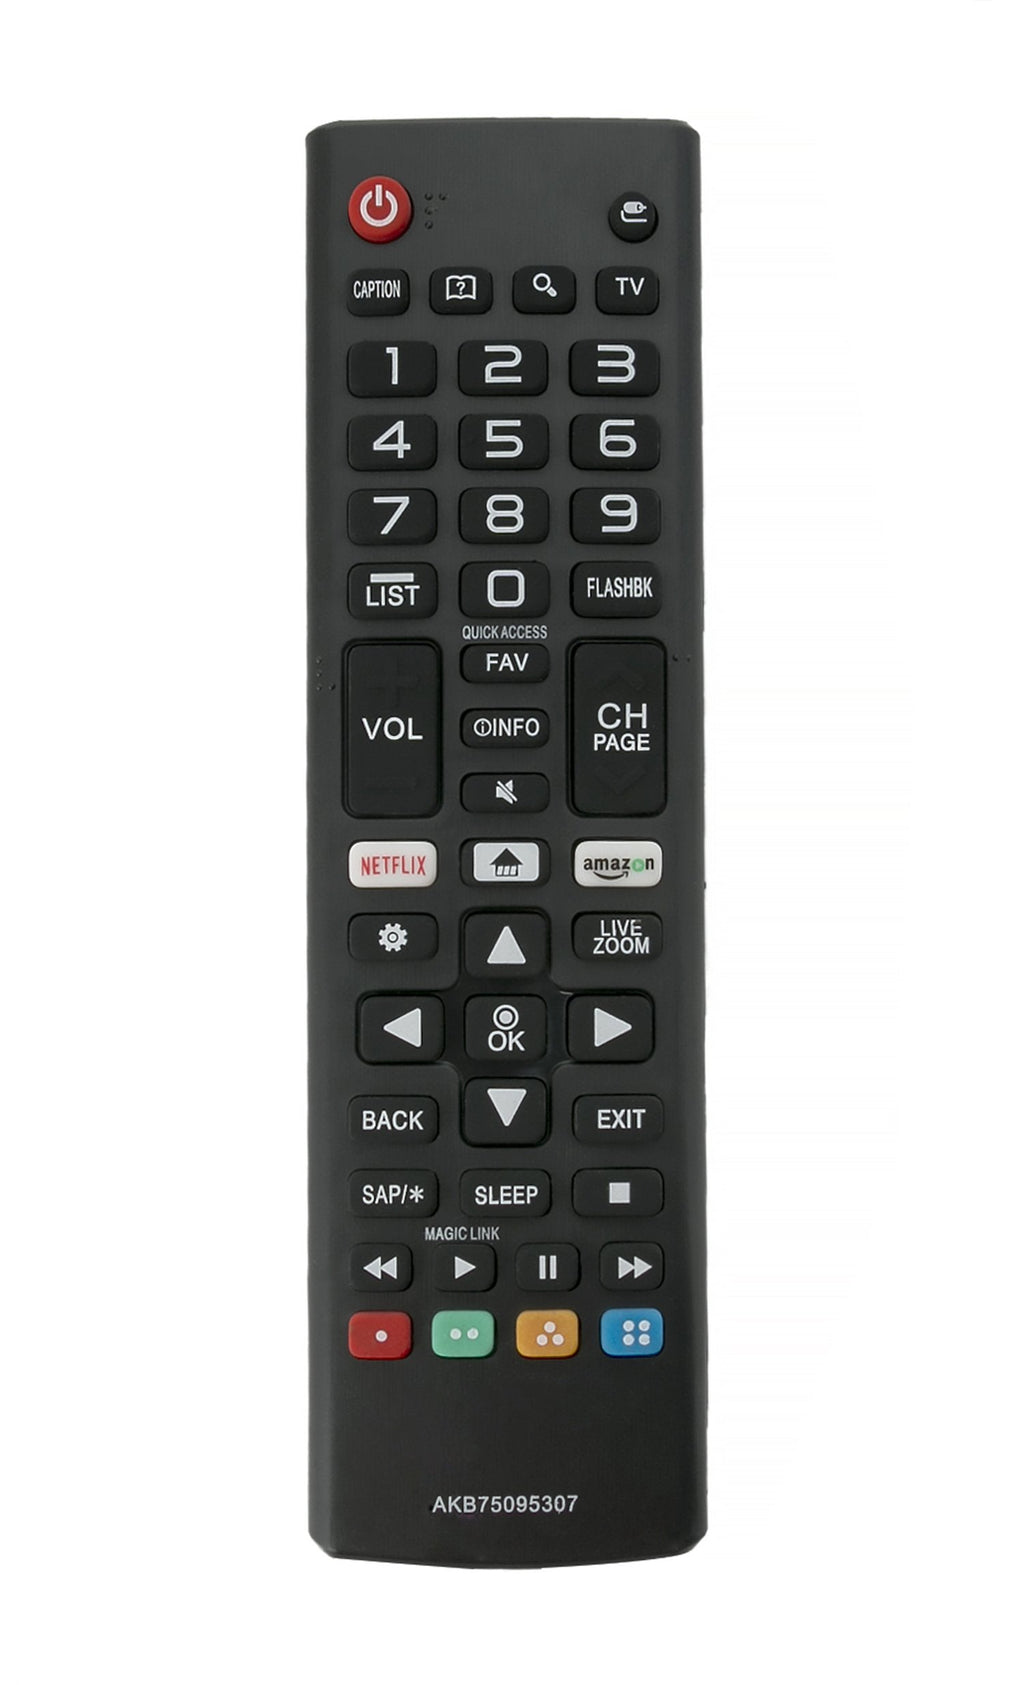 [Australia - AusPower] - New AKB75095307 Replace Remote fit for LG TV 49UJ6050 49UJ6050-UC 49UJ6300 49UJ6300-UA 49UJ6350 9UJ6500-UB 55UJ6050 55UJ6050-UC 55UJ6300 75UJ657A-UB 32LJ550B 32LJ550B-UA 32LJ550M UJ6200 AN-MR650A 